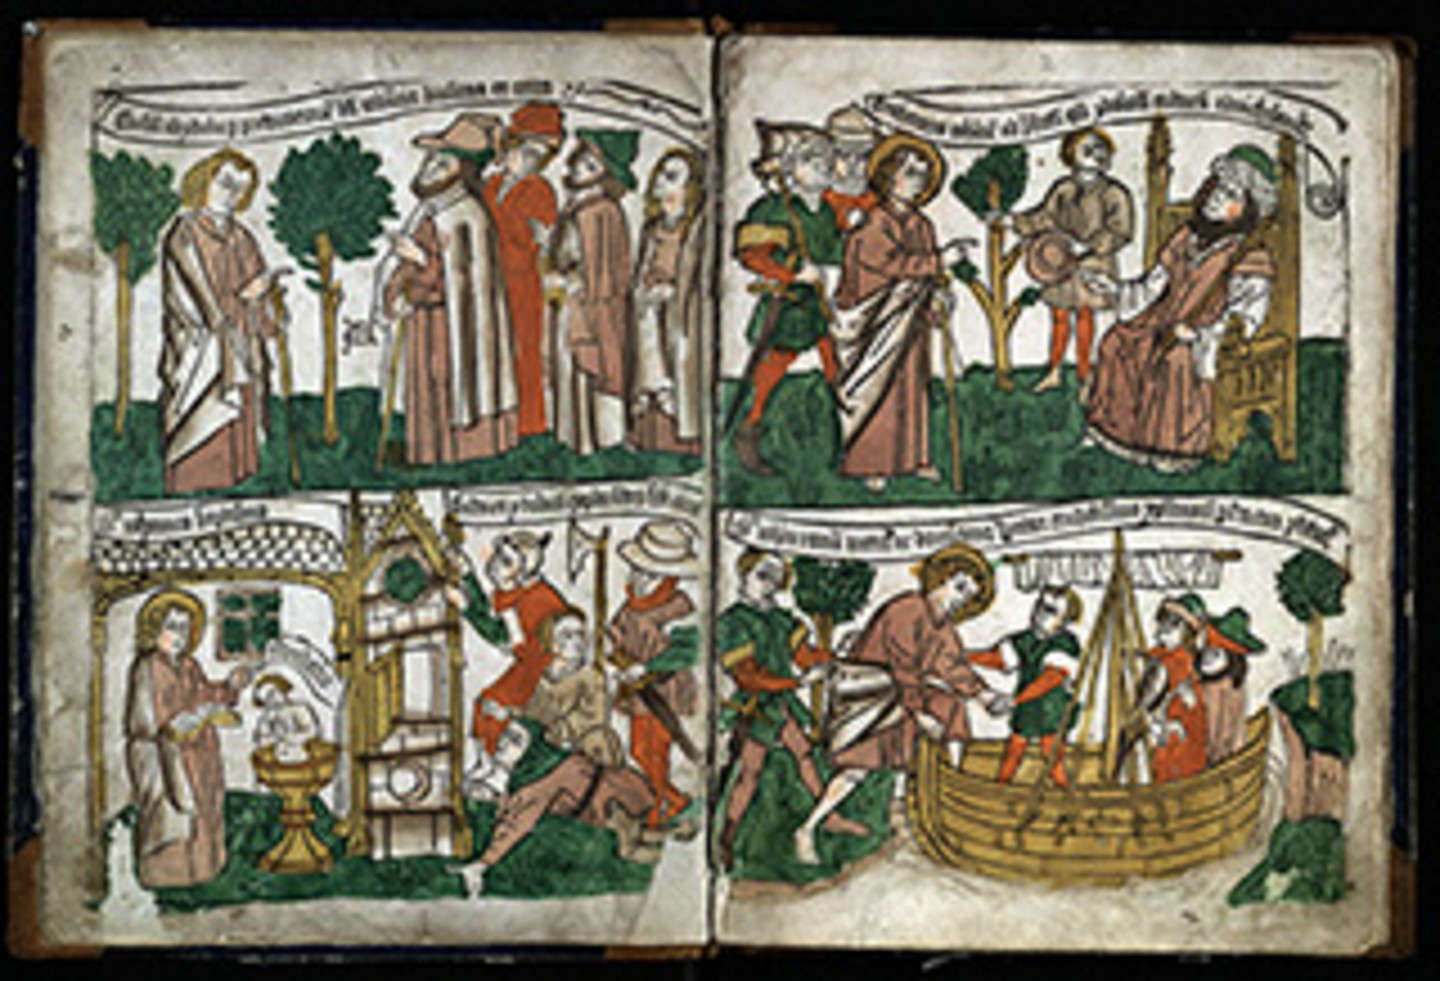 Foto eines Blattes aus dem Blockbuch "Apocalypsis" um 1465. Es sind Collagen dargestellt und die Seite ist farbreich.